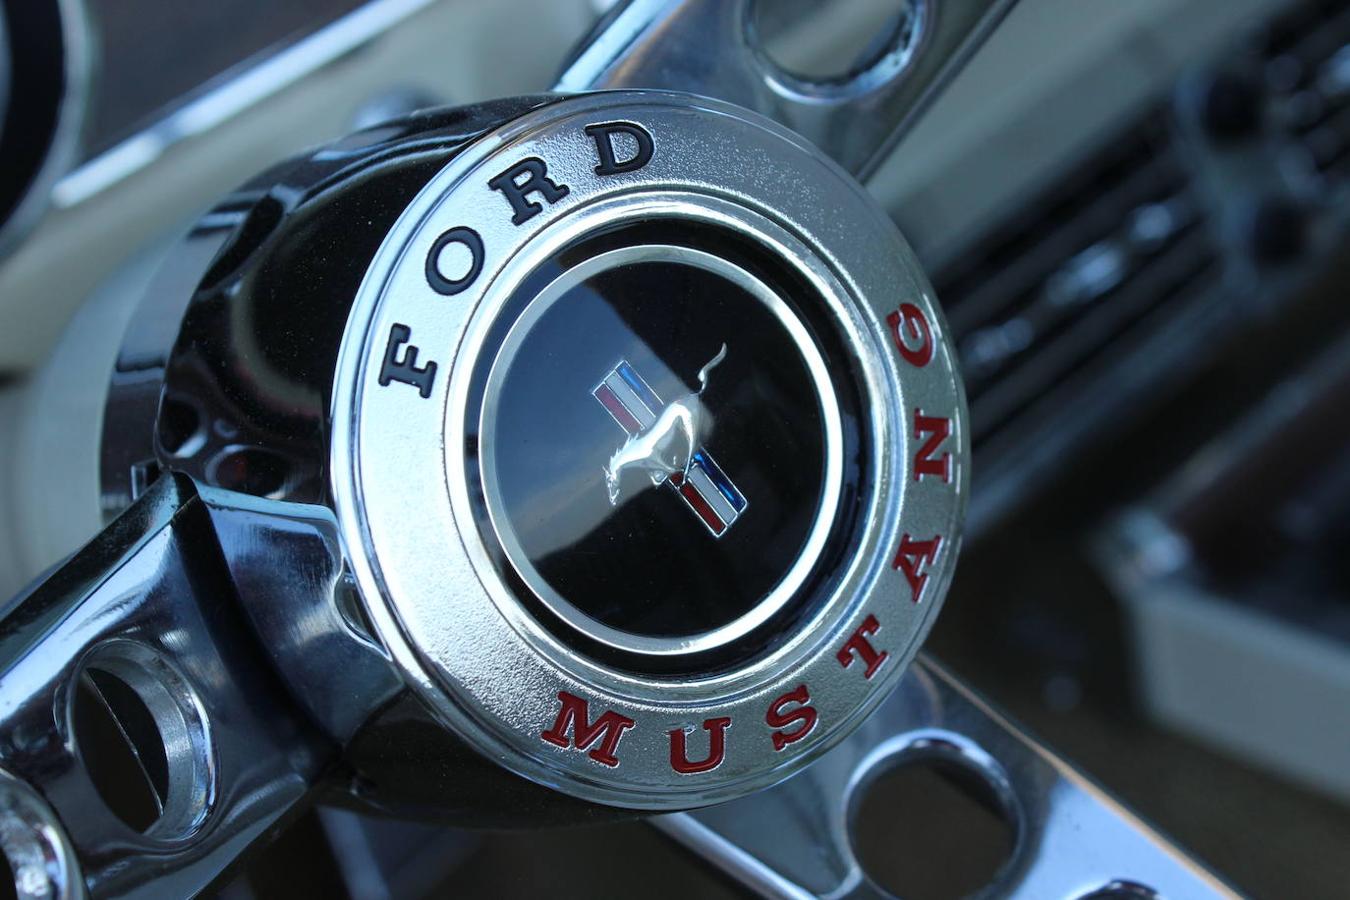 Juntamos al nuevo Ford Mustang Bullit con el Mustang inicial de 1966, dos coches que además de compartir su mecánica V8 también comparten el mismo espíritu y carisma que tantos éxitos les ha brindado